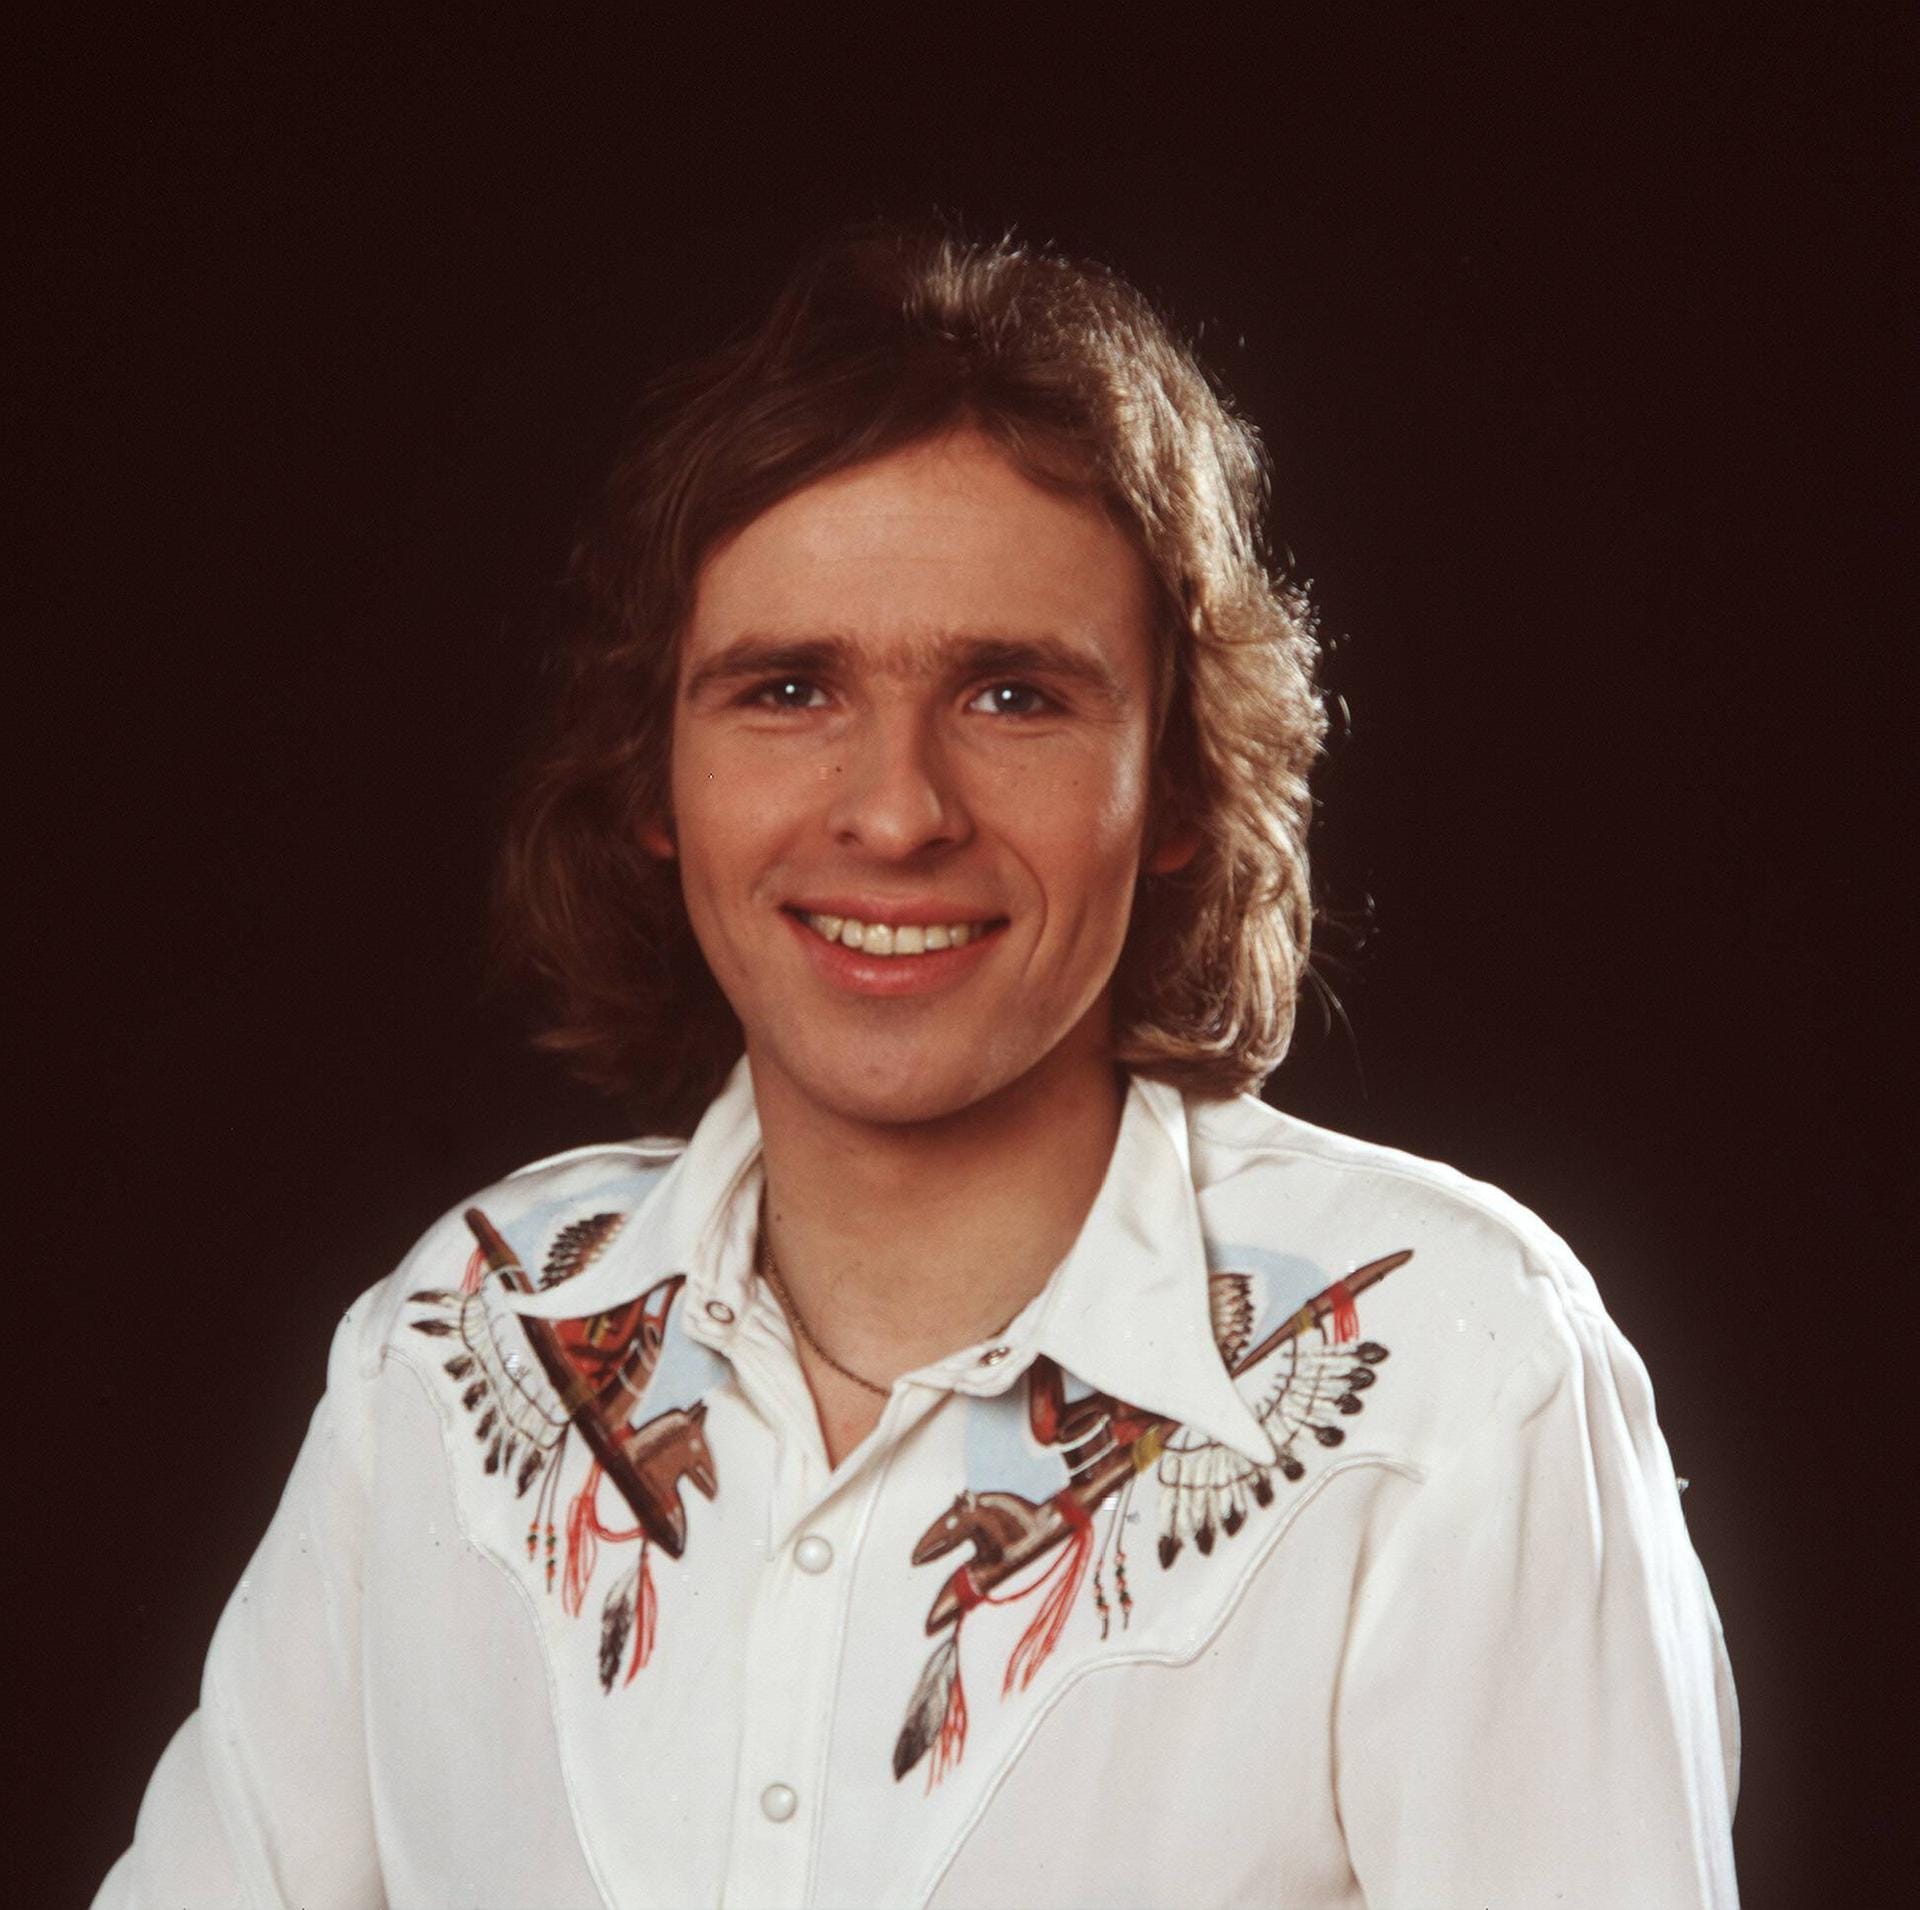 Thomas Gottschalk: Seine Karriere begann in den 1970er Jahren als Radio-Moderator.